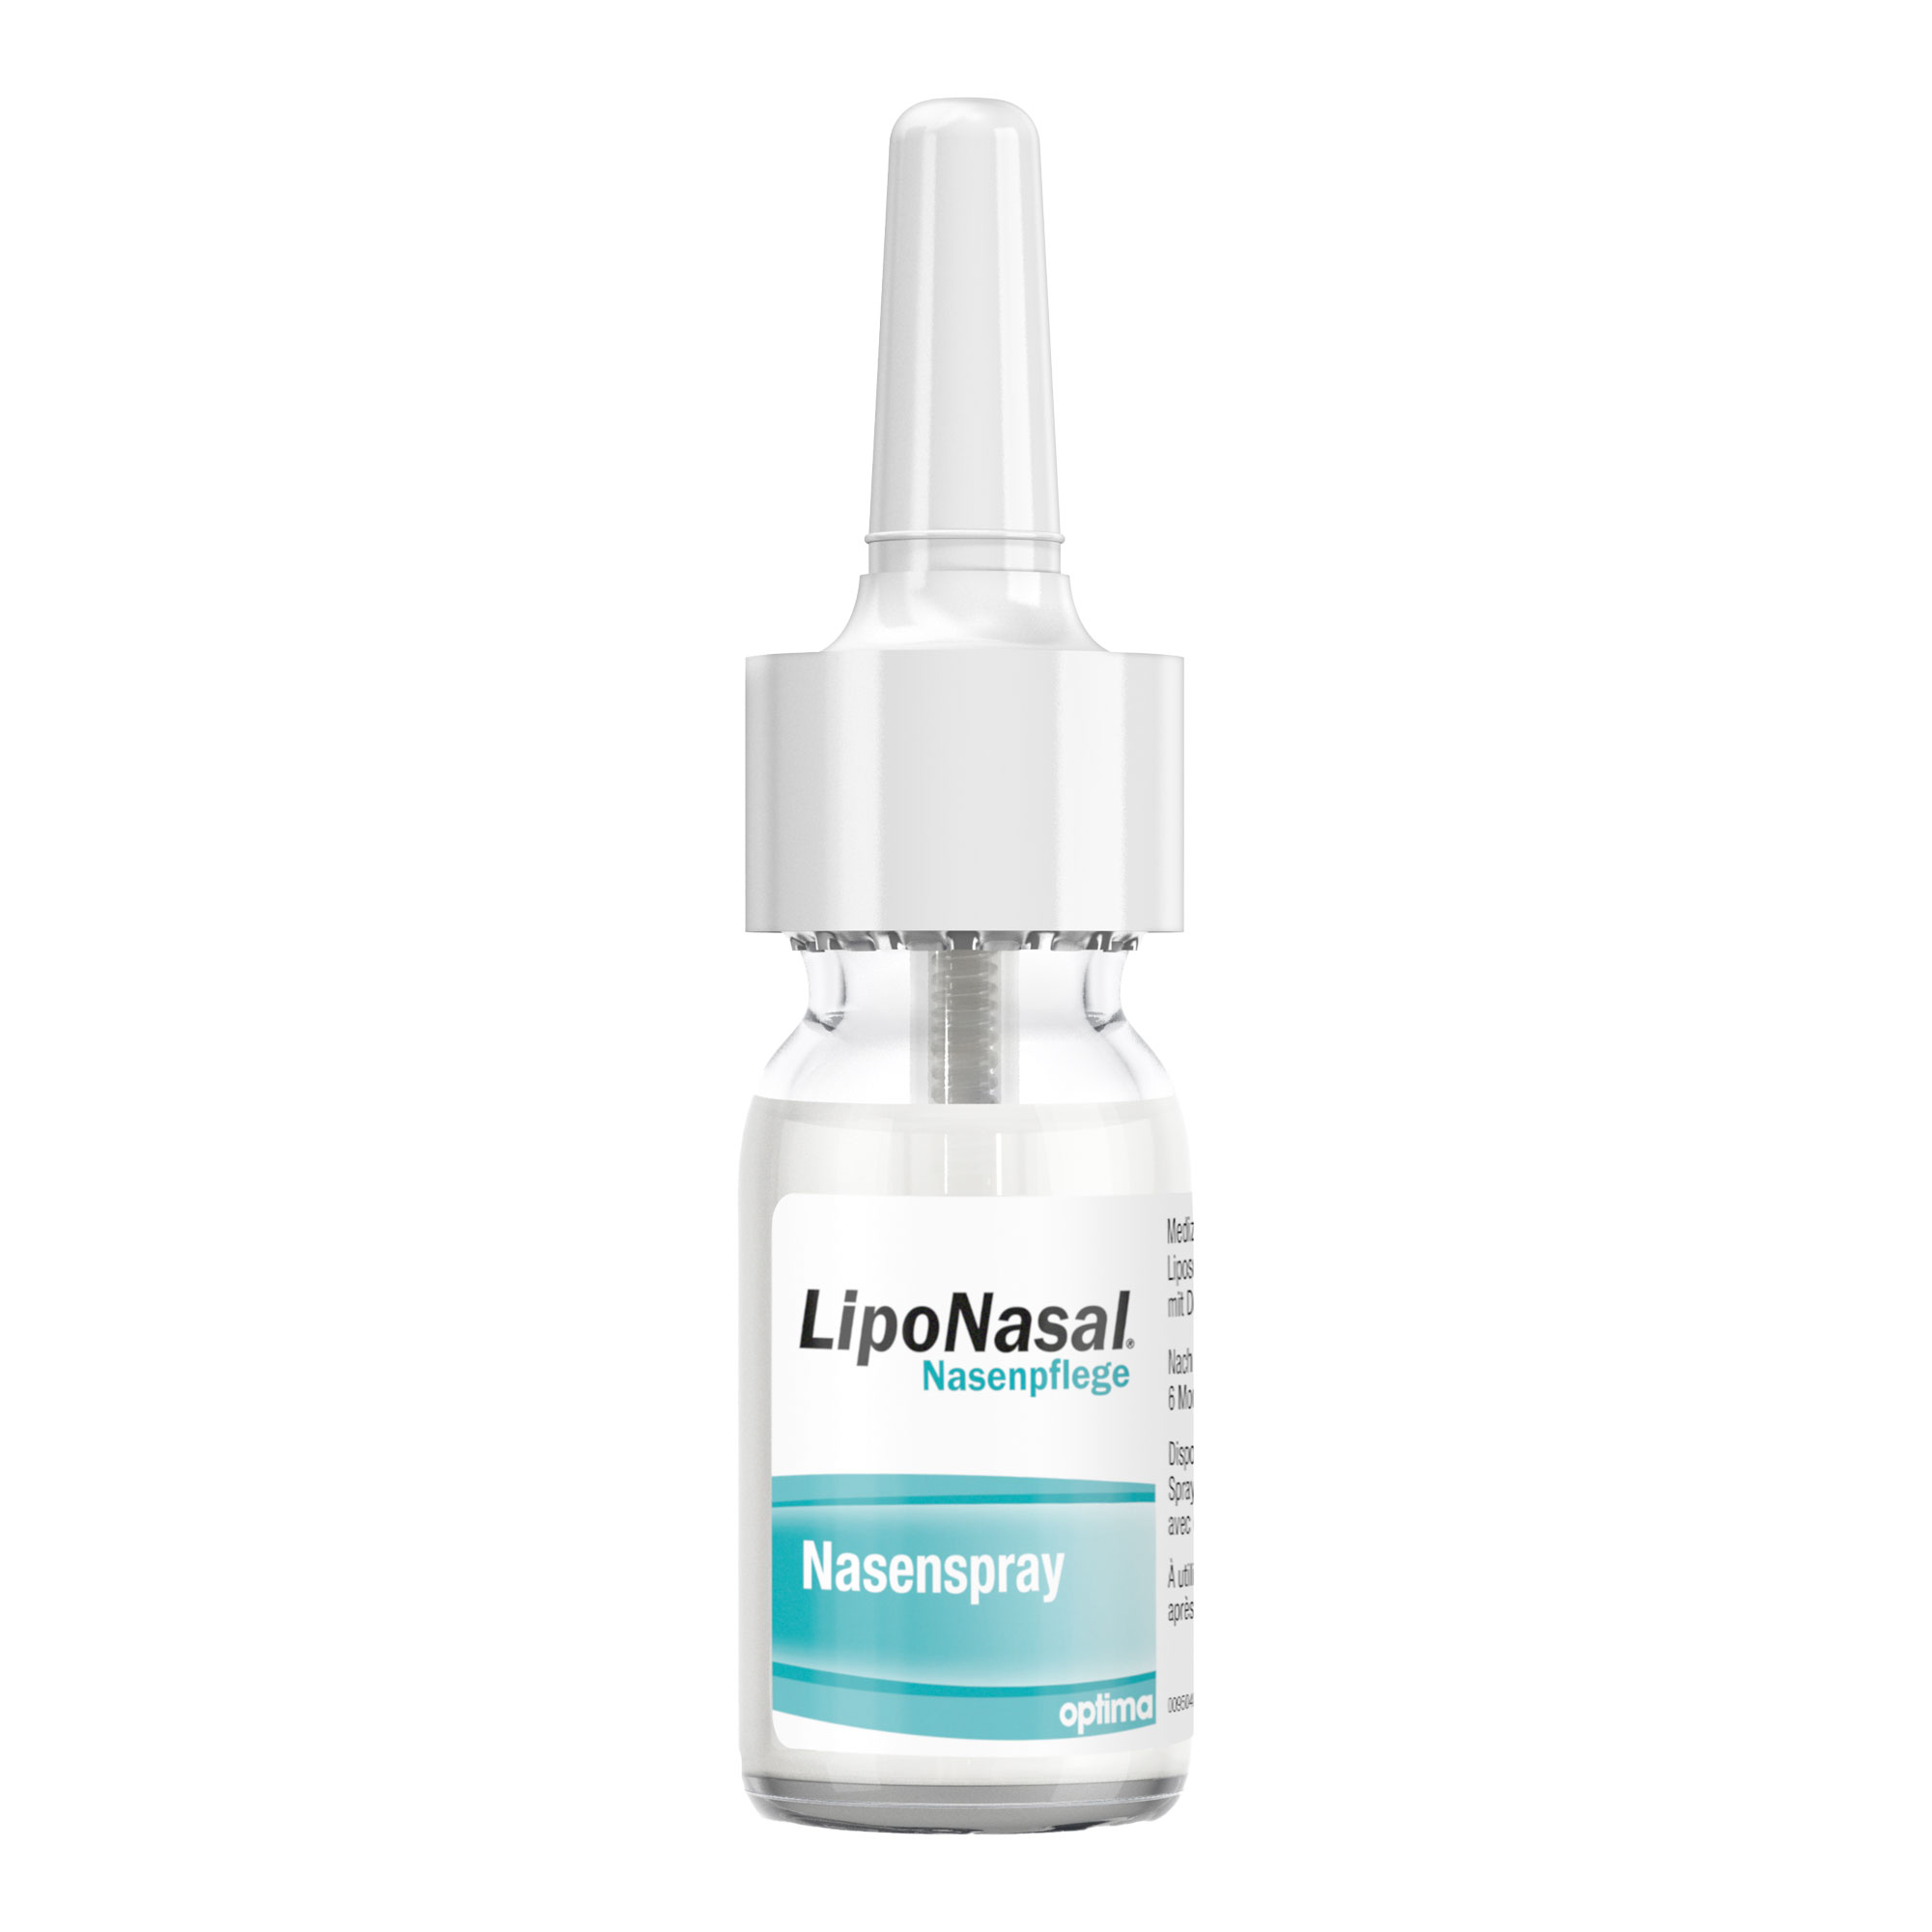 Liponasal Nasenpflege Spray